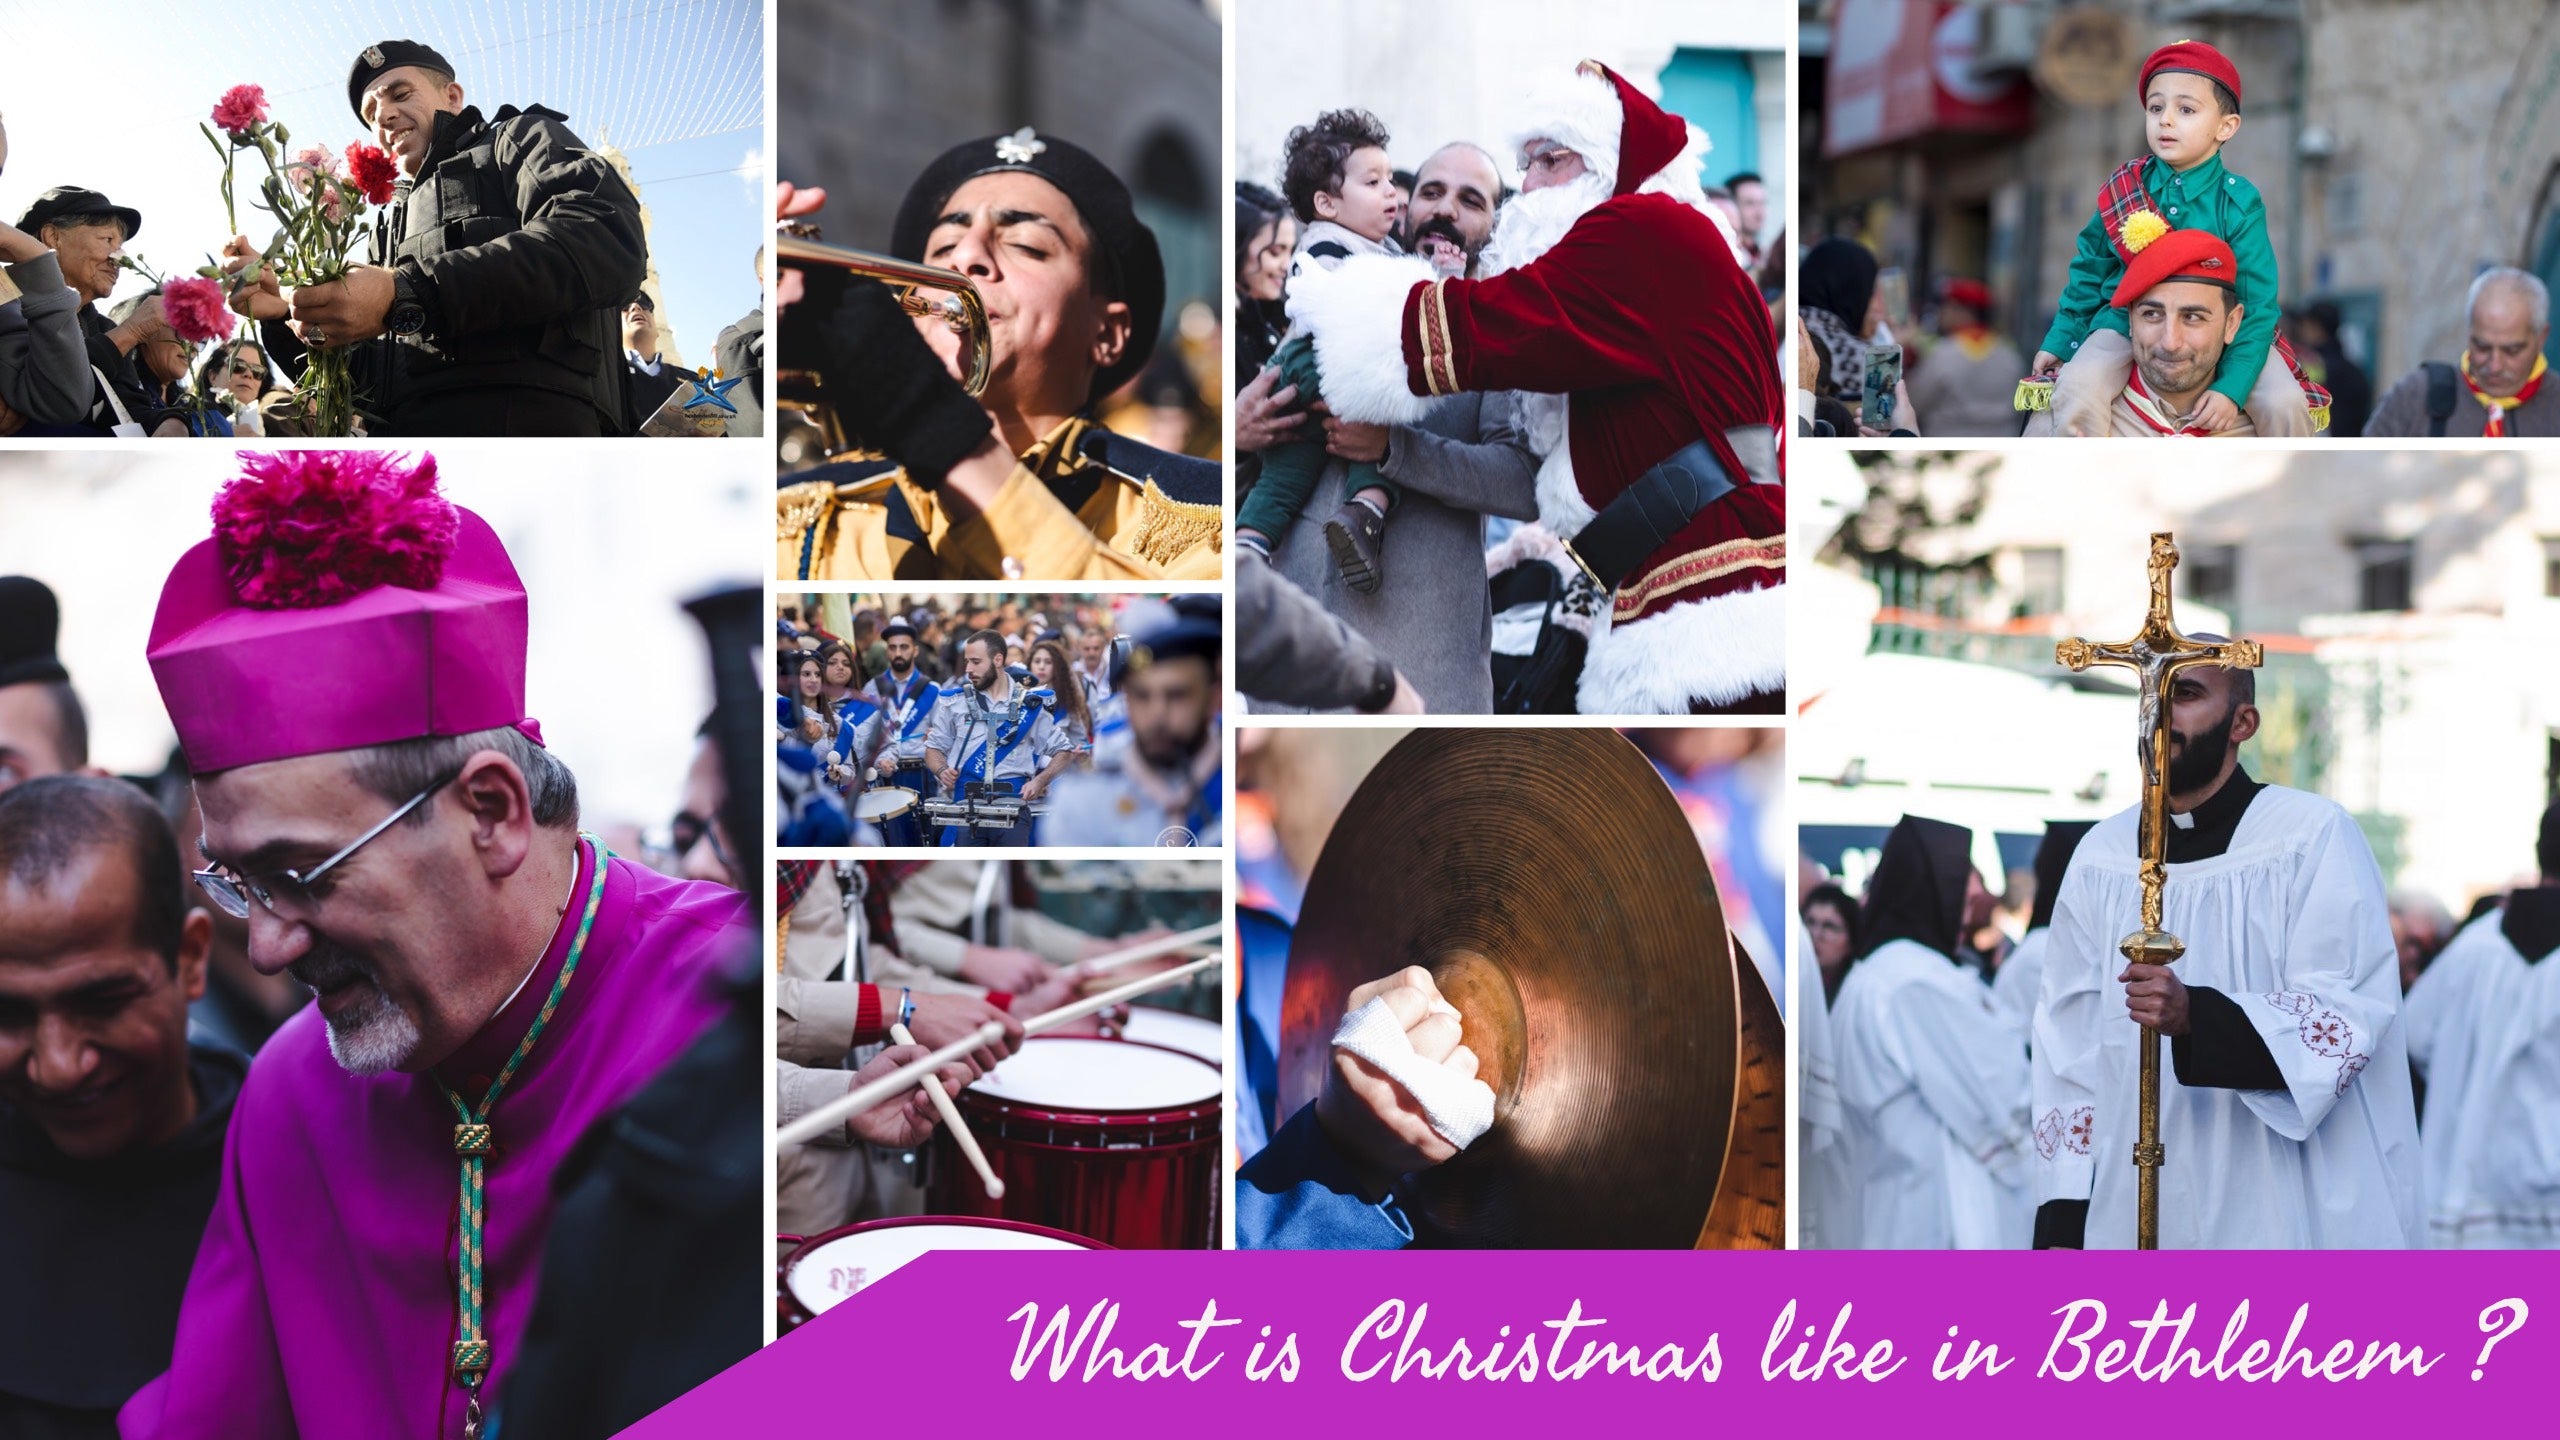 What is Christmas like in Bethlehem?